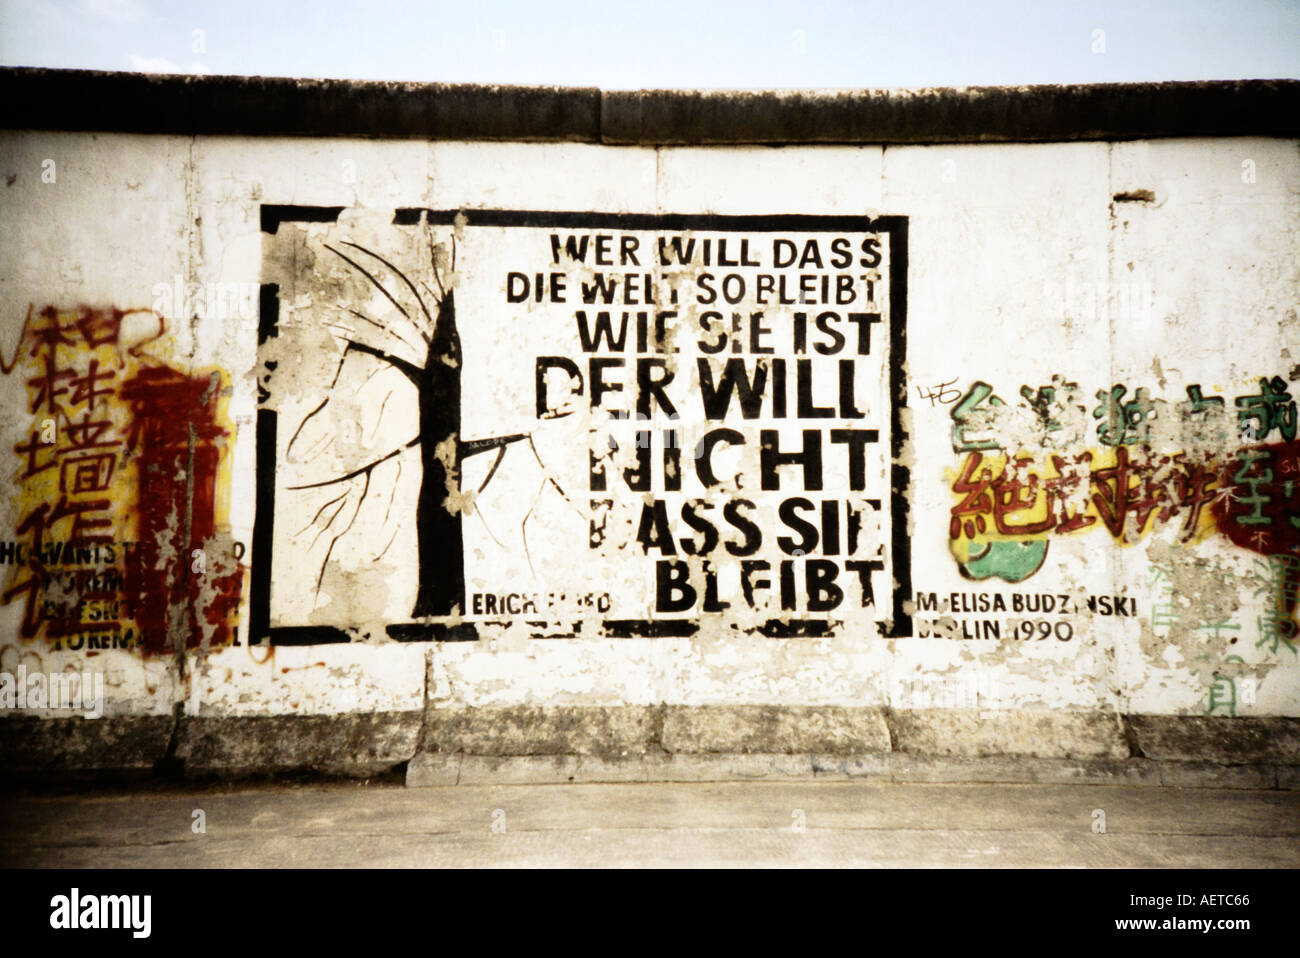 Il murale del muro di Berlino in East Side Gallery Berlin poesia di Erich Fried Germania Europa - immagine presa su una fotocamera lomo Foto Stock